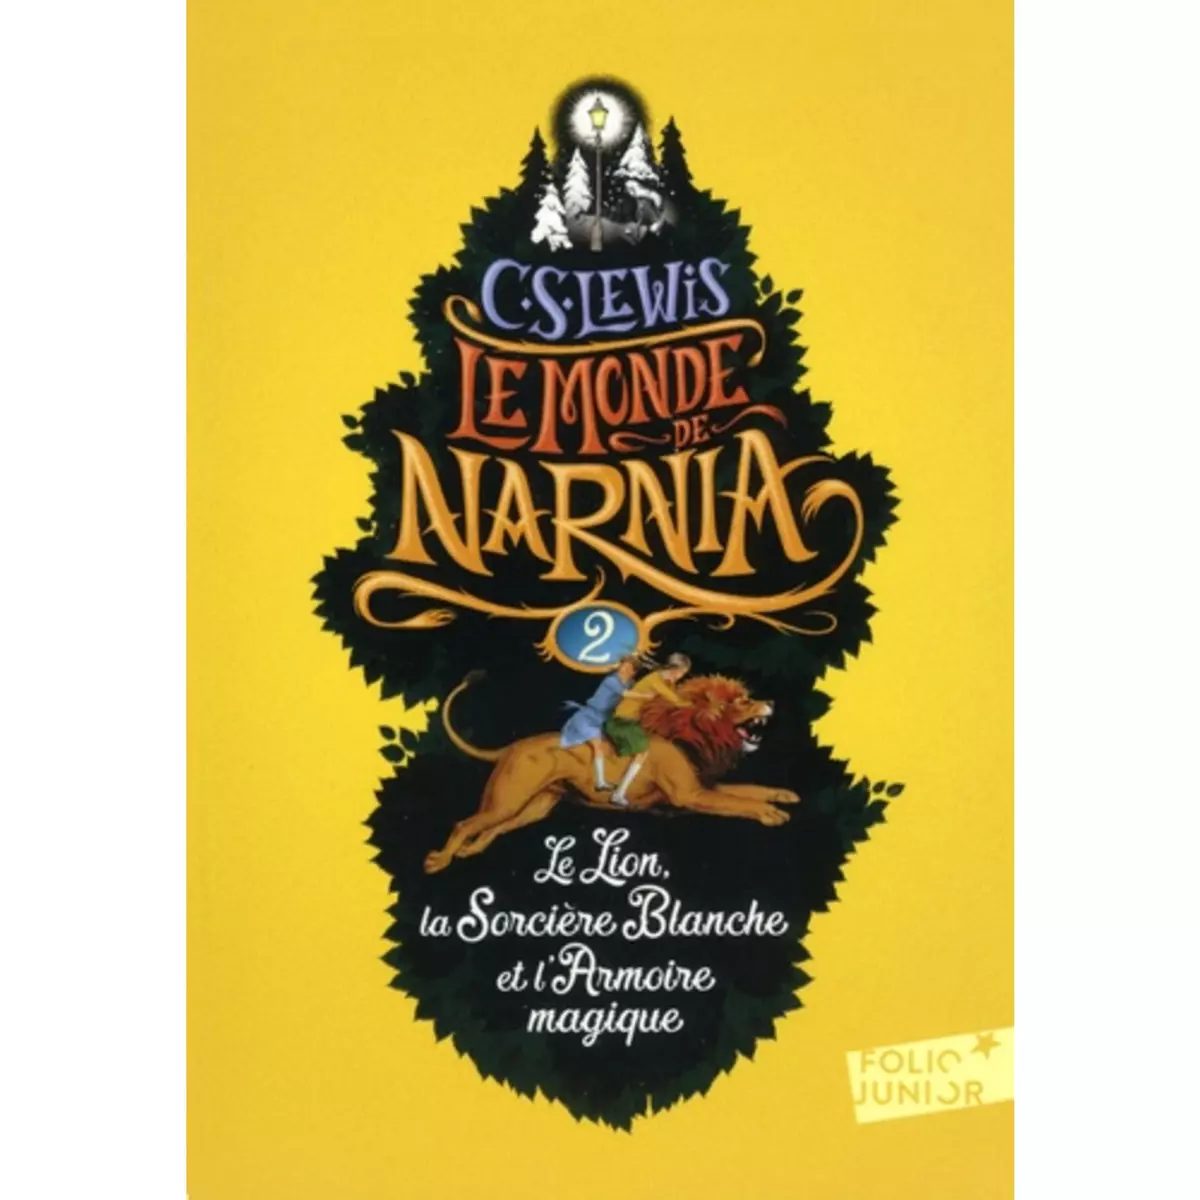  LE MONDE DE NARNIA TOME 2 : LE LION, LA SORCIERE BLANCHE ET L'ARMOIRE MAGIQUE, Lewis C.S.